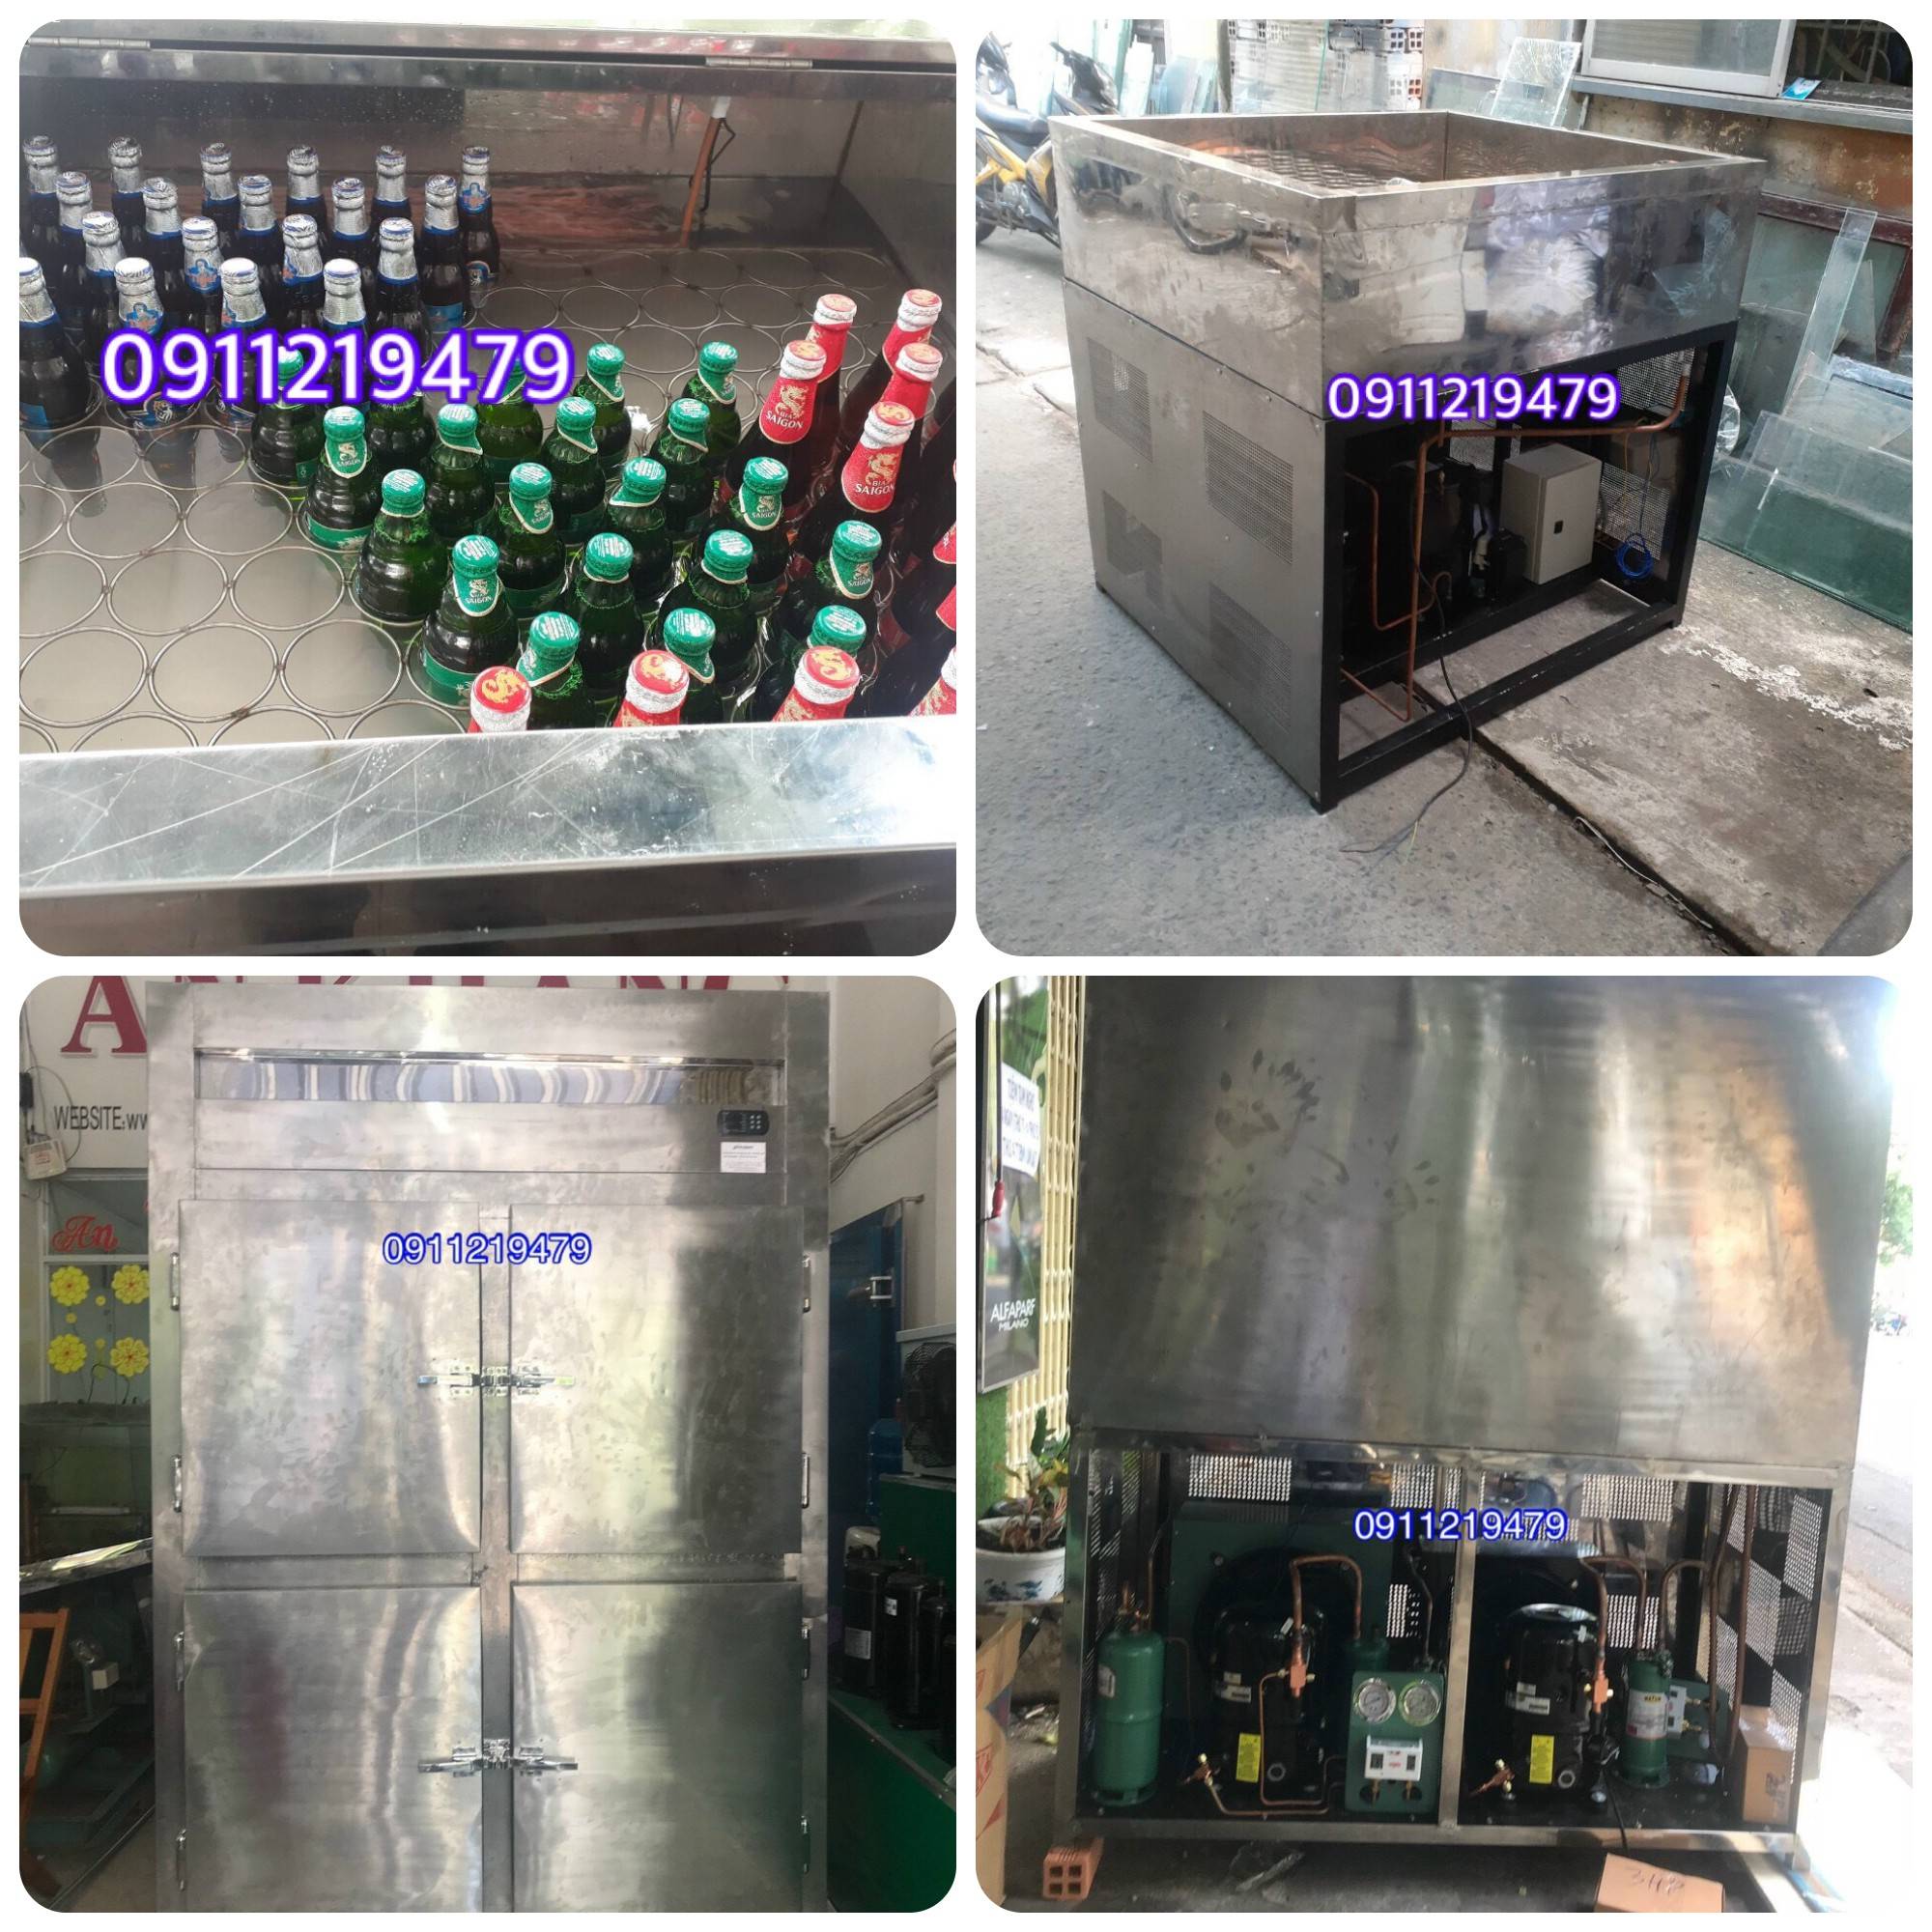 Cung cấp tủ bia sệt tại đường Trần Hưng Đạo Q 1, 0911.219.479